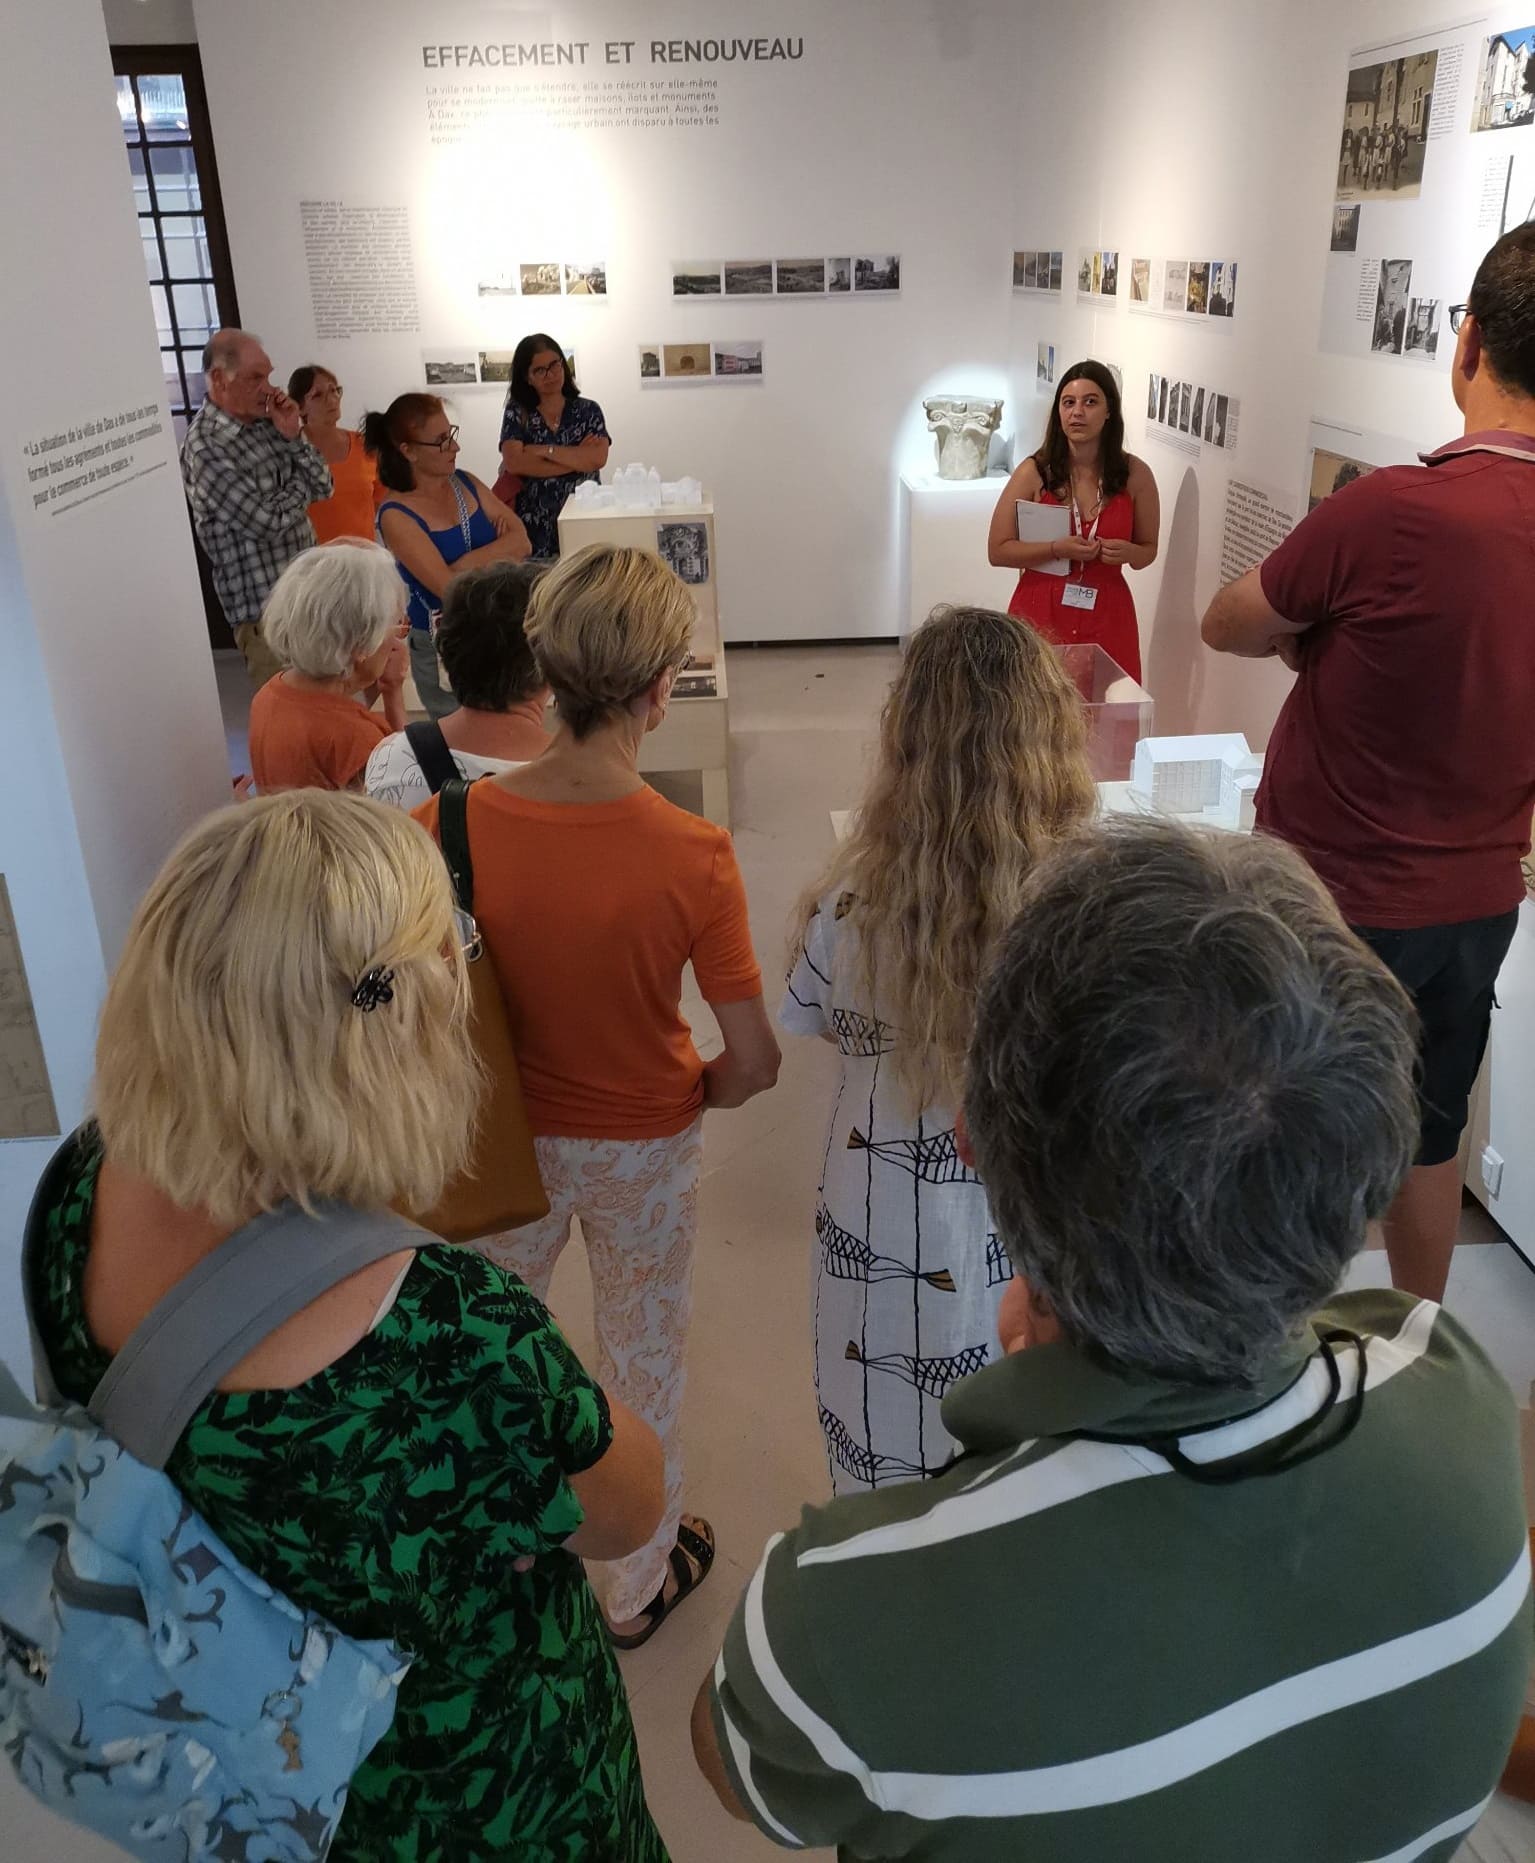 Photographie d'un groupe d'adultes en train d'écouter une guide interprétant les œuvres du musée dans le cadre d'une visite commentée